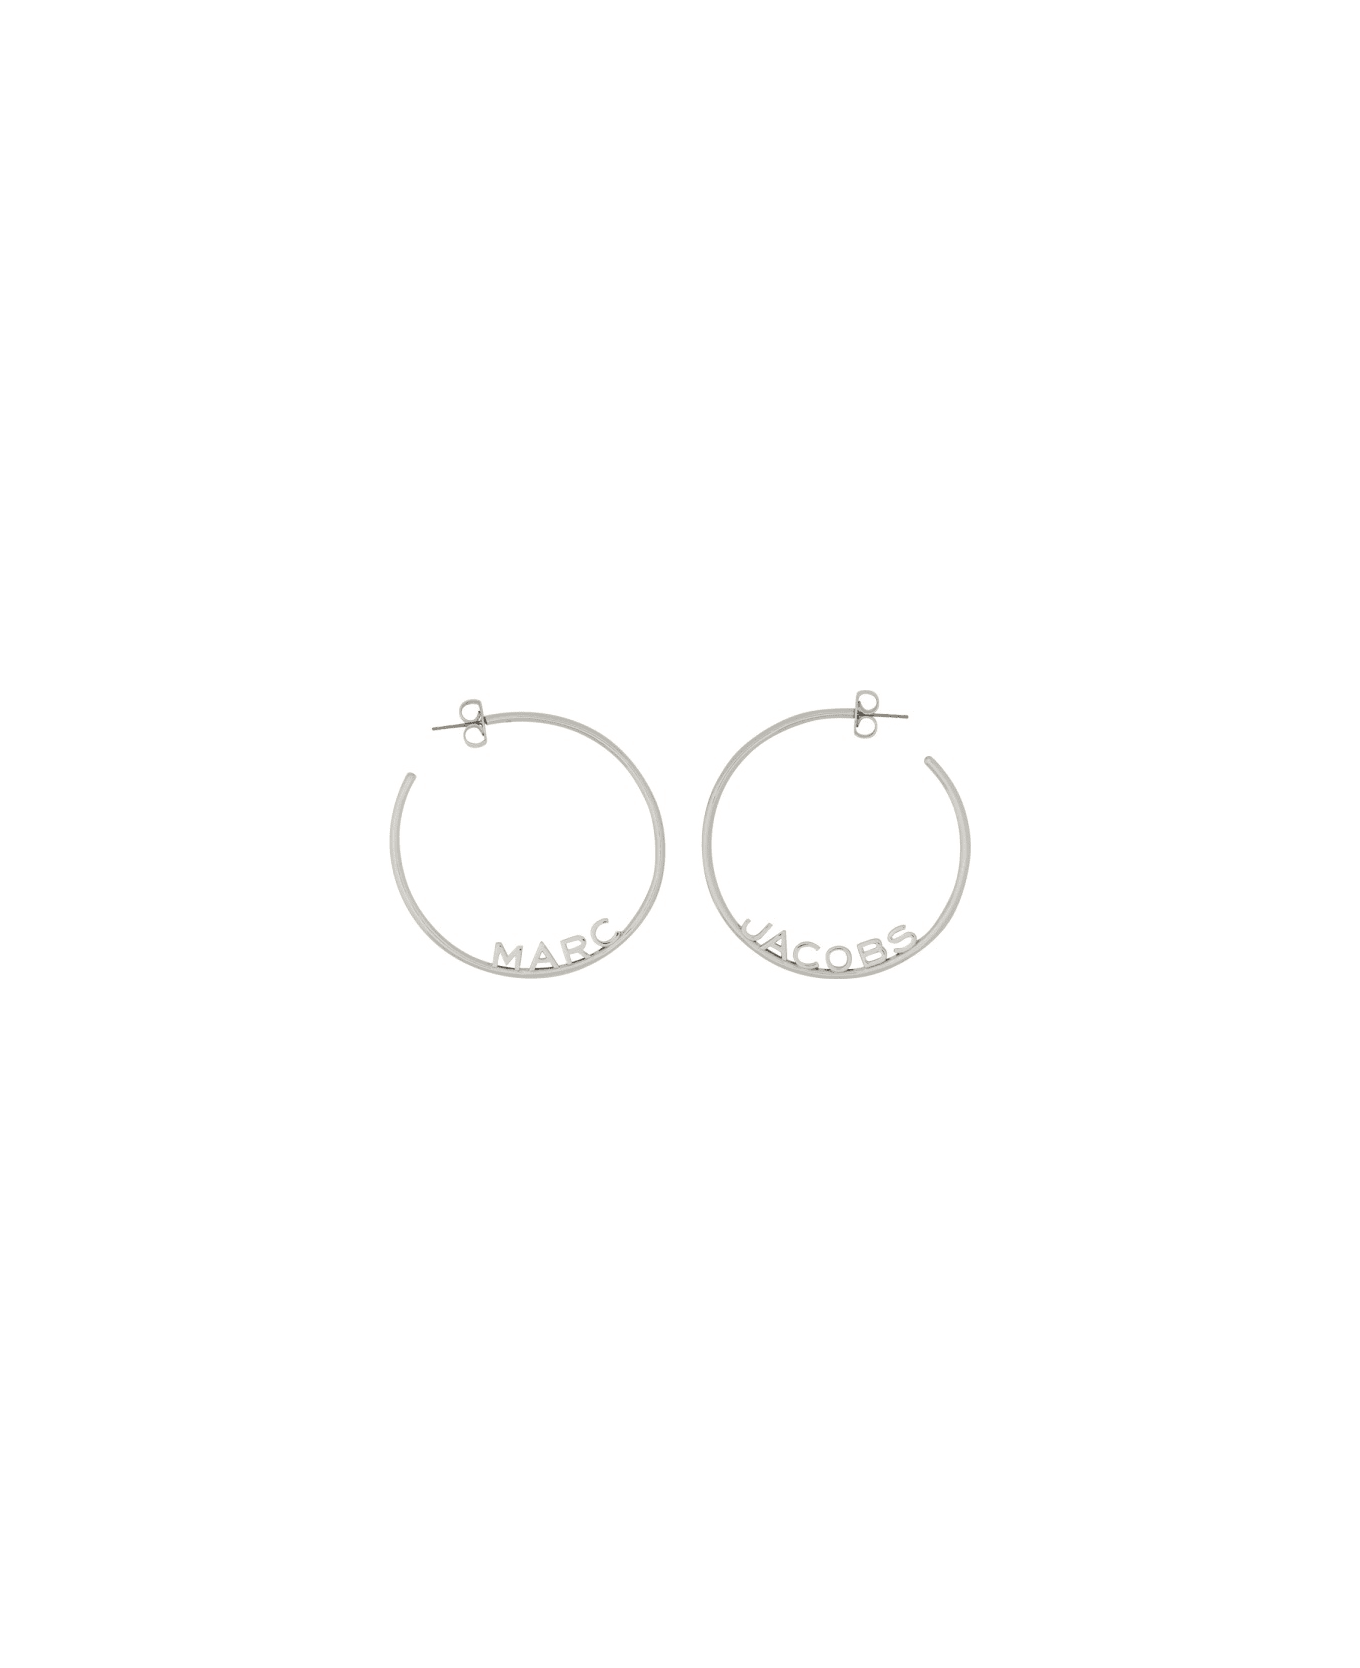 Marc Jacobs "monogram" Hoop Earrings - SILVER イヤリング